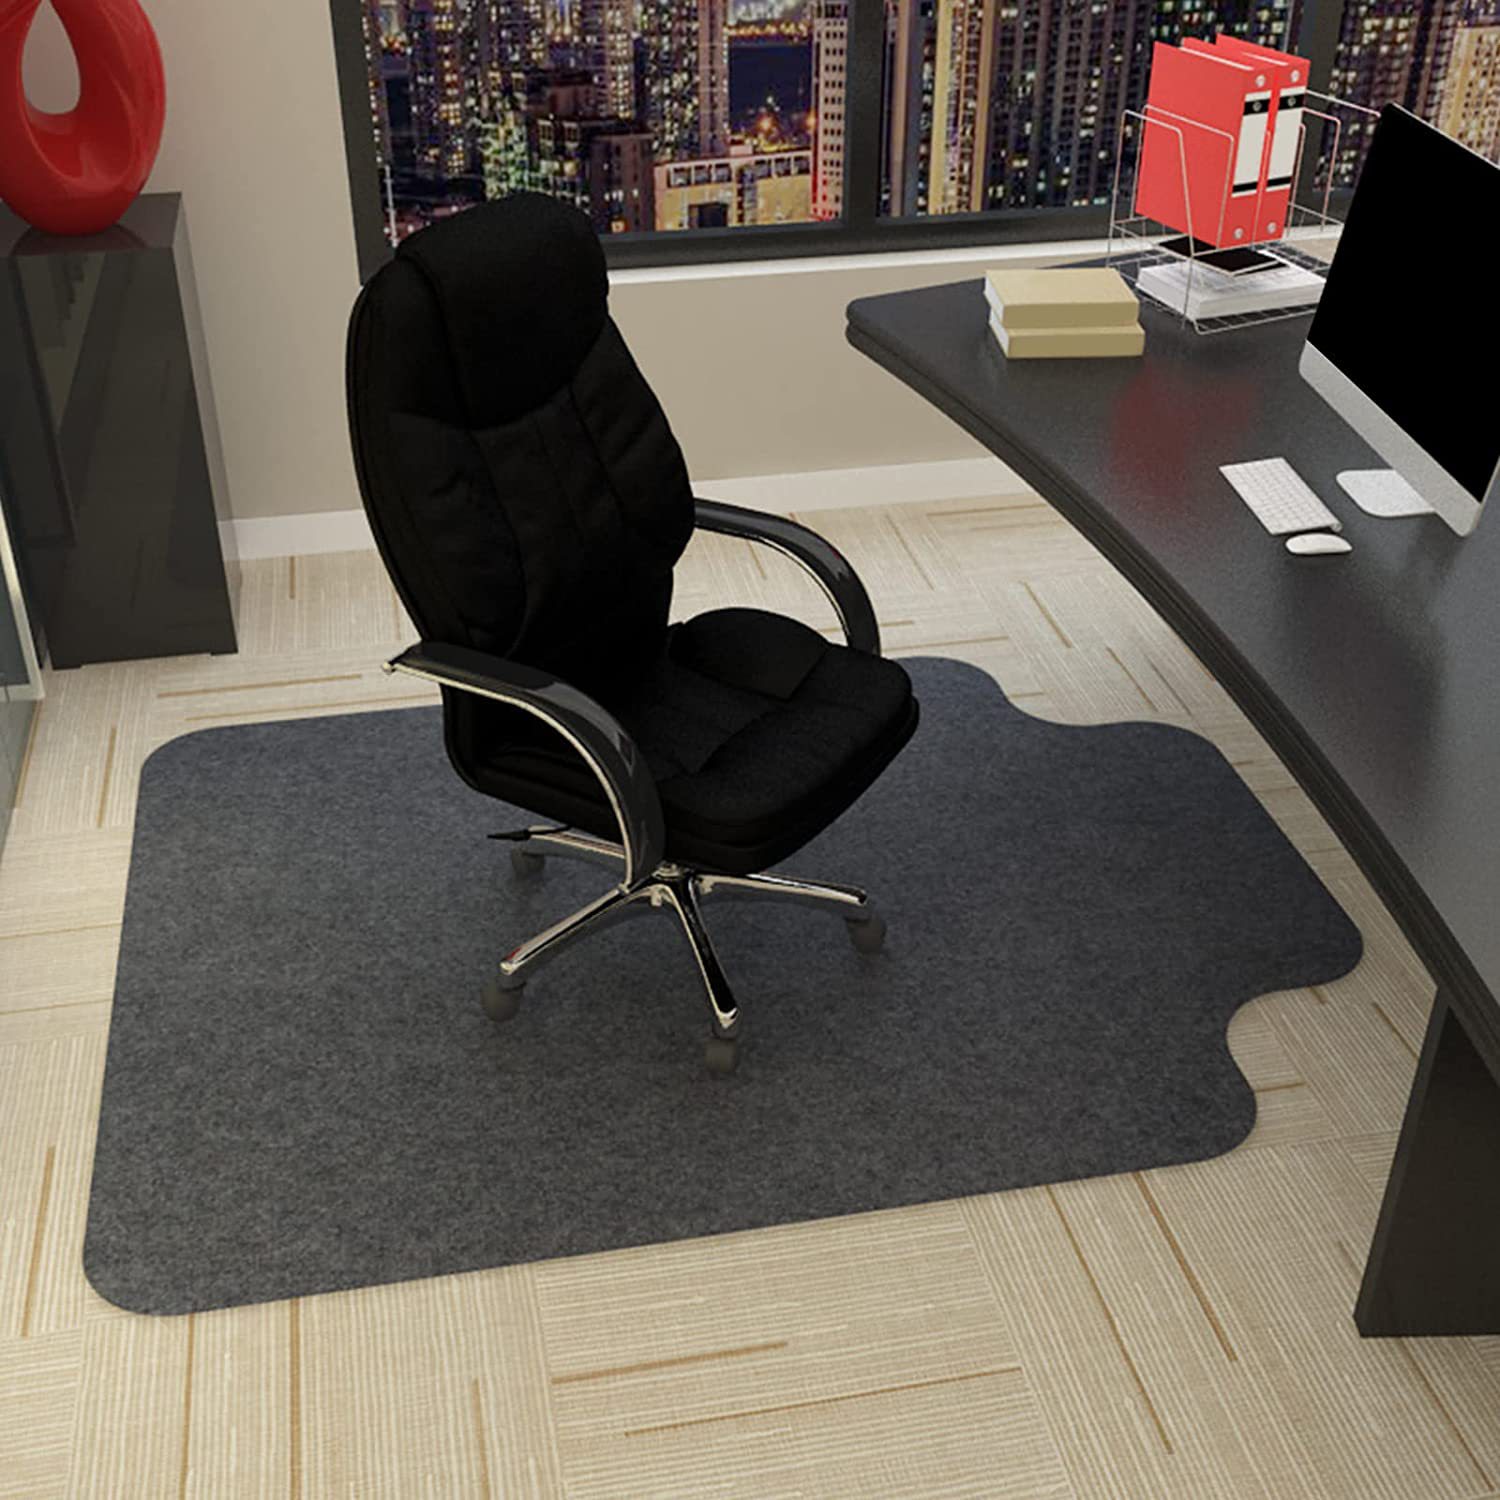 Chair floor mat, office carpet, computer chair mat, household floor mat, silent swivel chair, anti slip foot mat